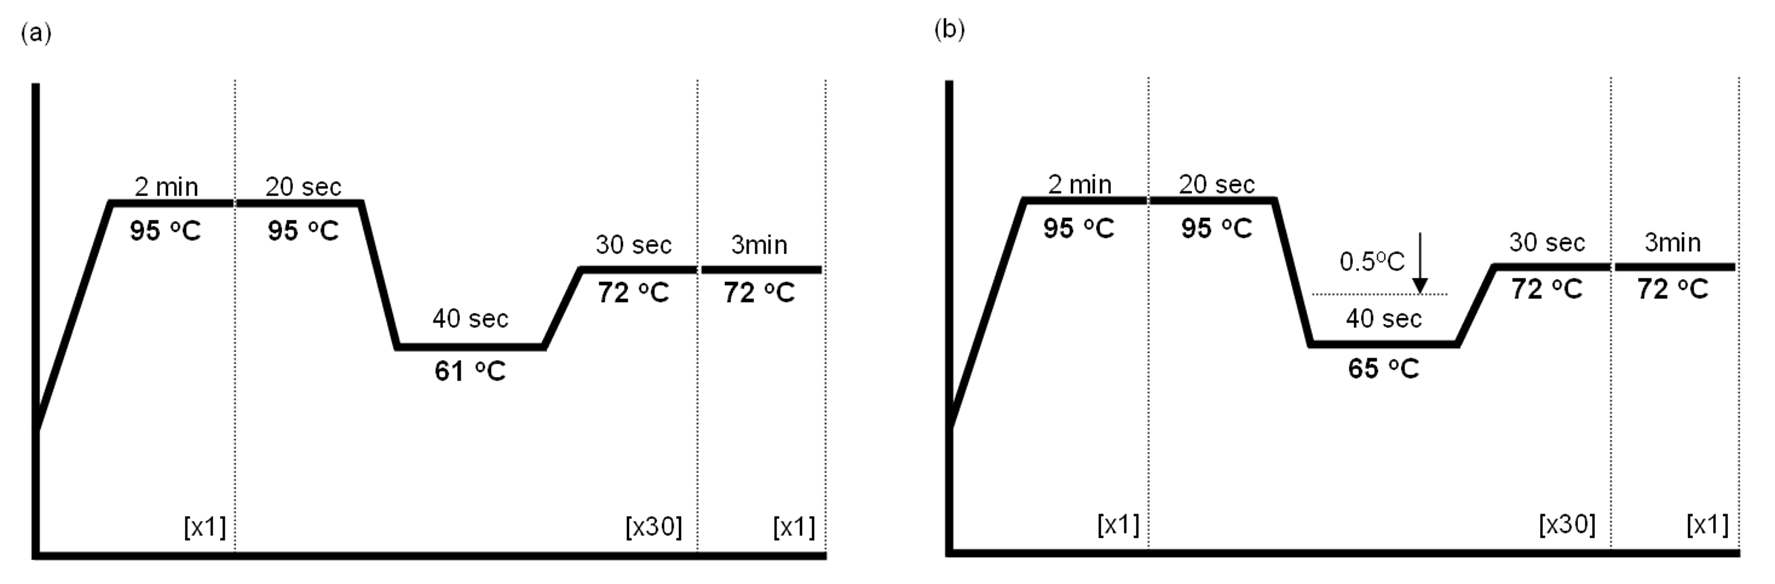 그림 3-55 Denaturing, annealing, extension 조건 별 시간 및 온도에 대한 PCR 조건